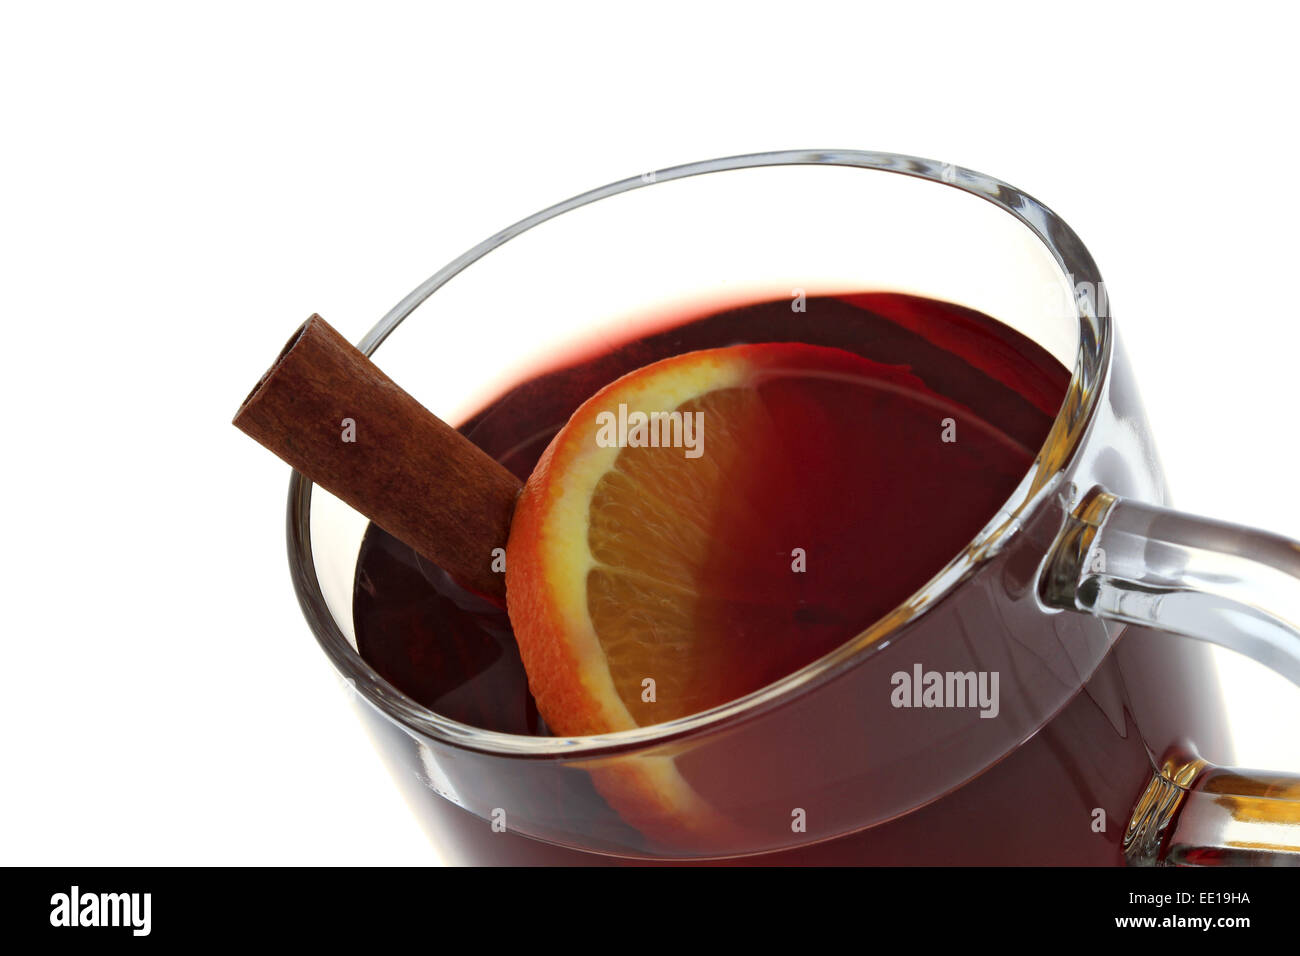 Ein Glas heisser Glühwein Stock Photo - Alamy